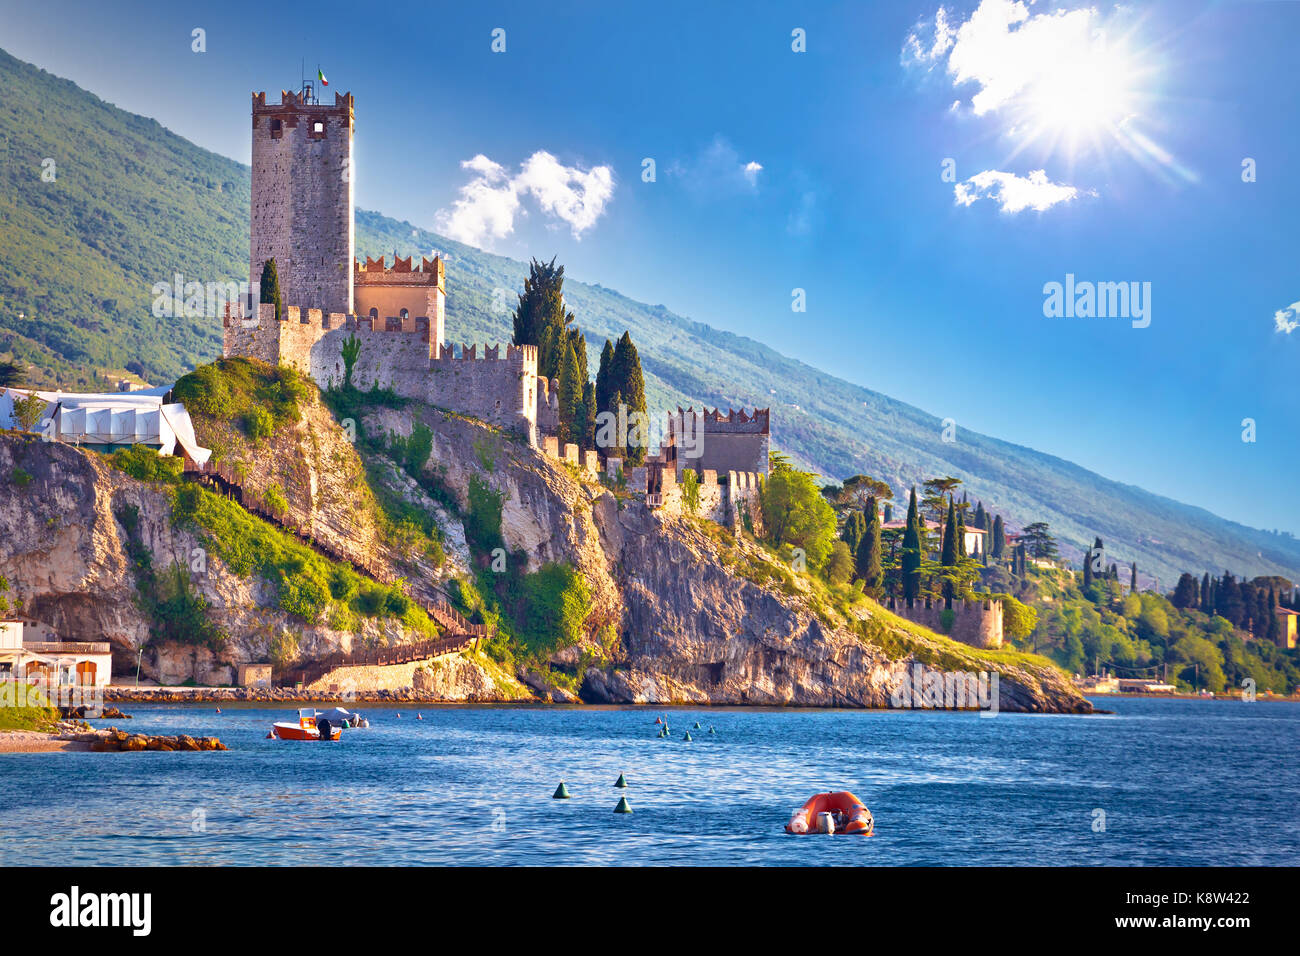 Ville de Malcesine château et vue front de mer, région du Veneto de l'Italie, lago di Garda Banque D'Images